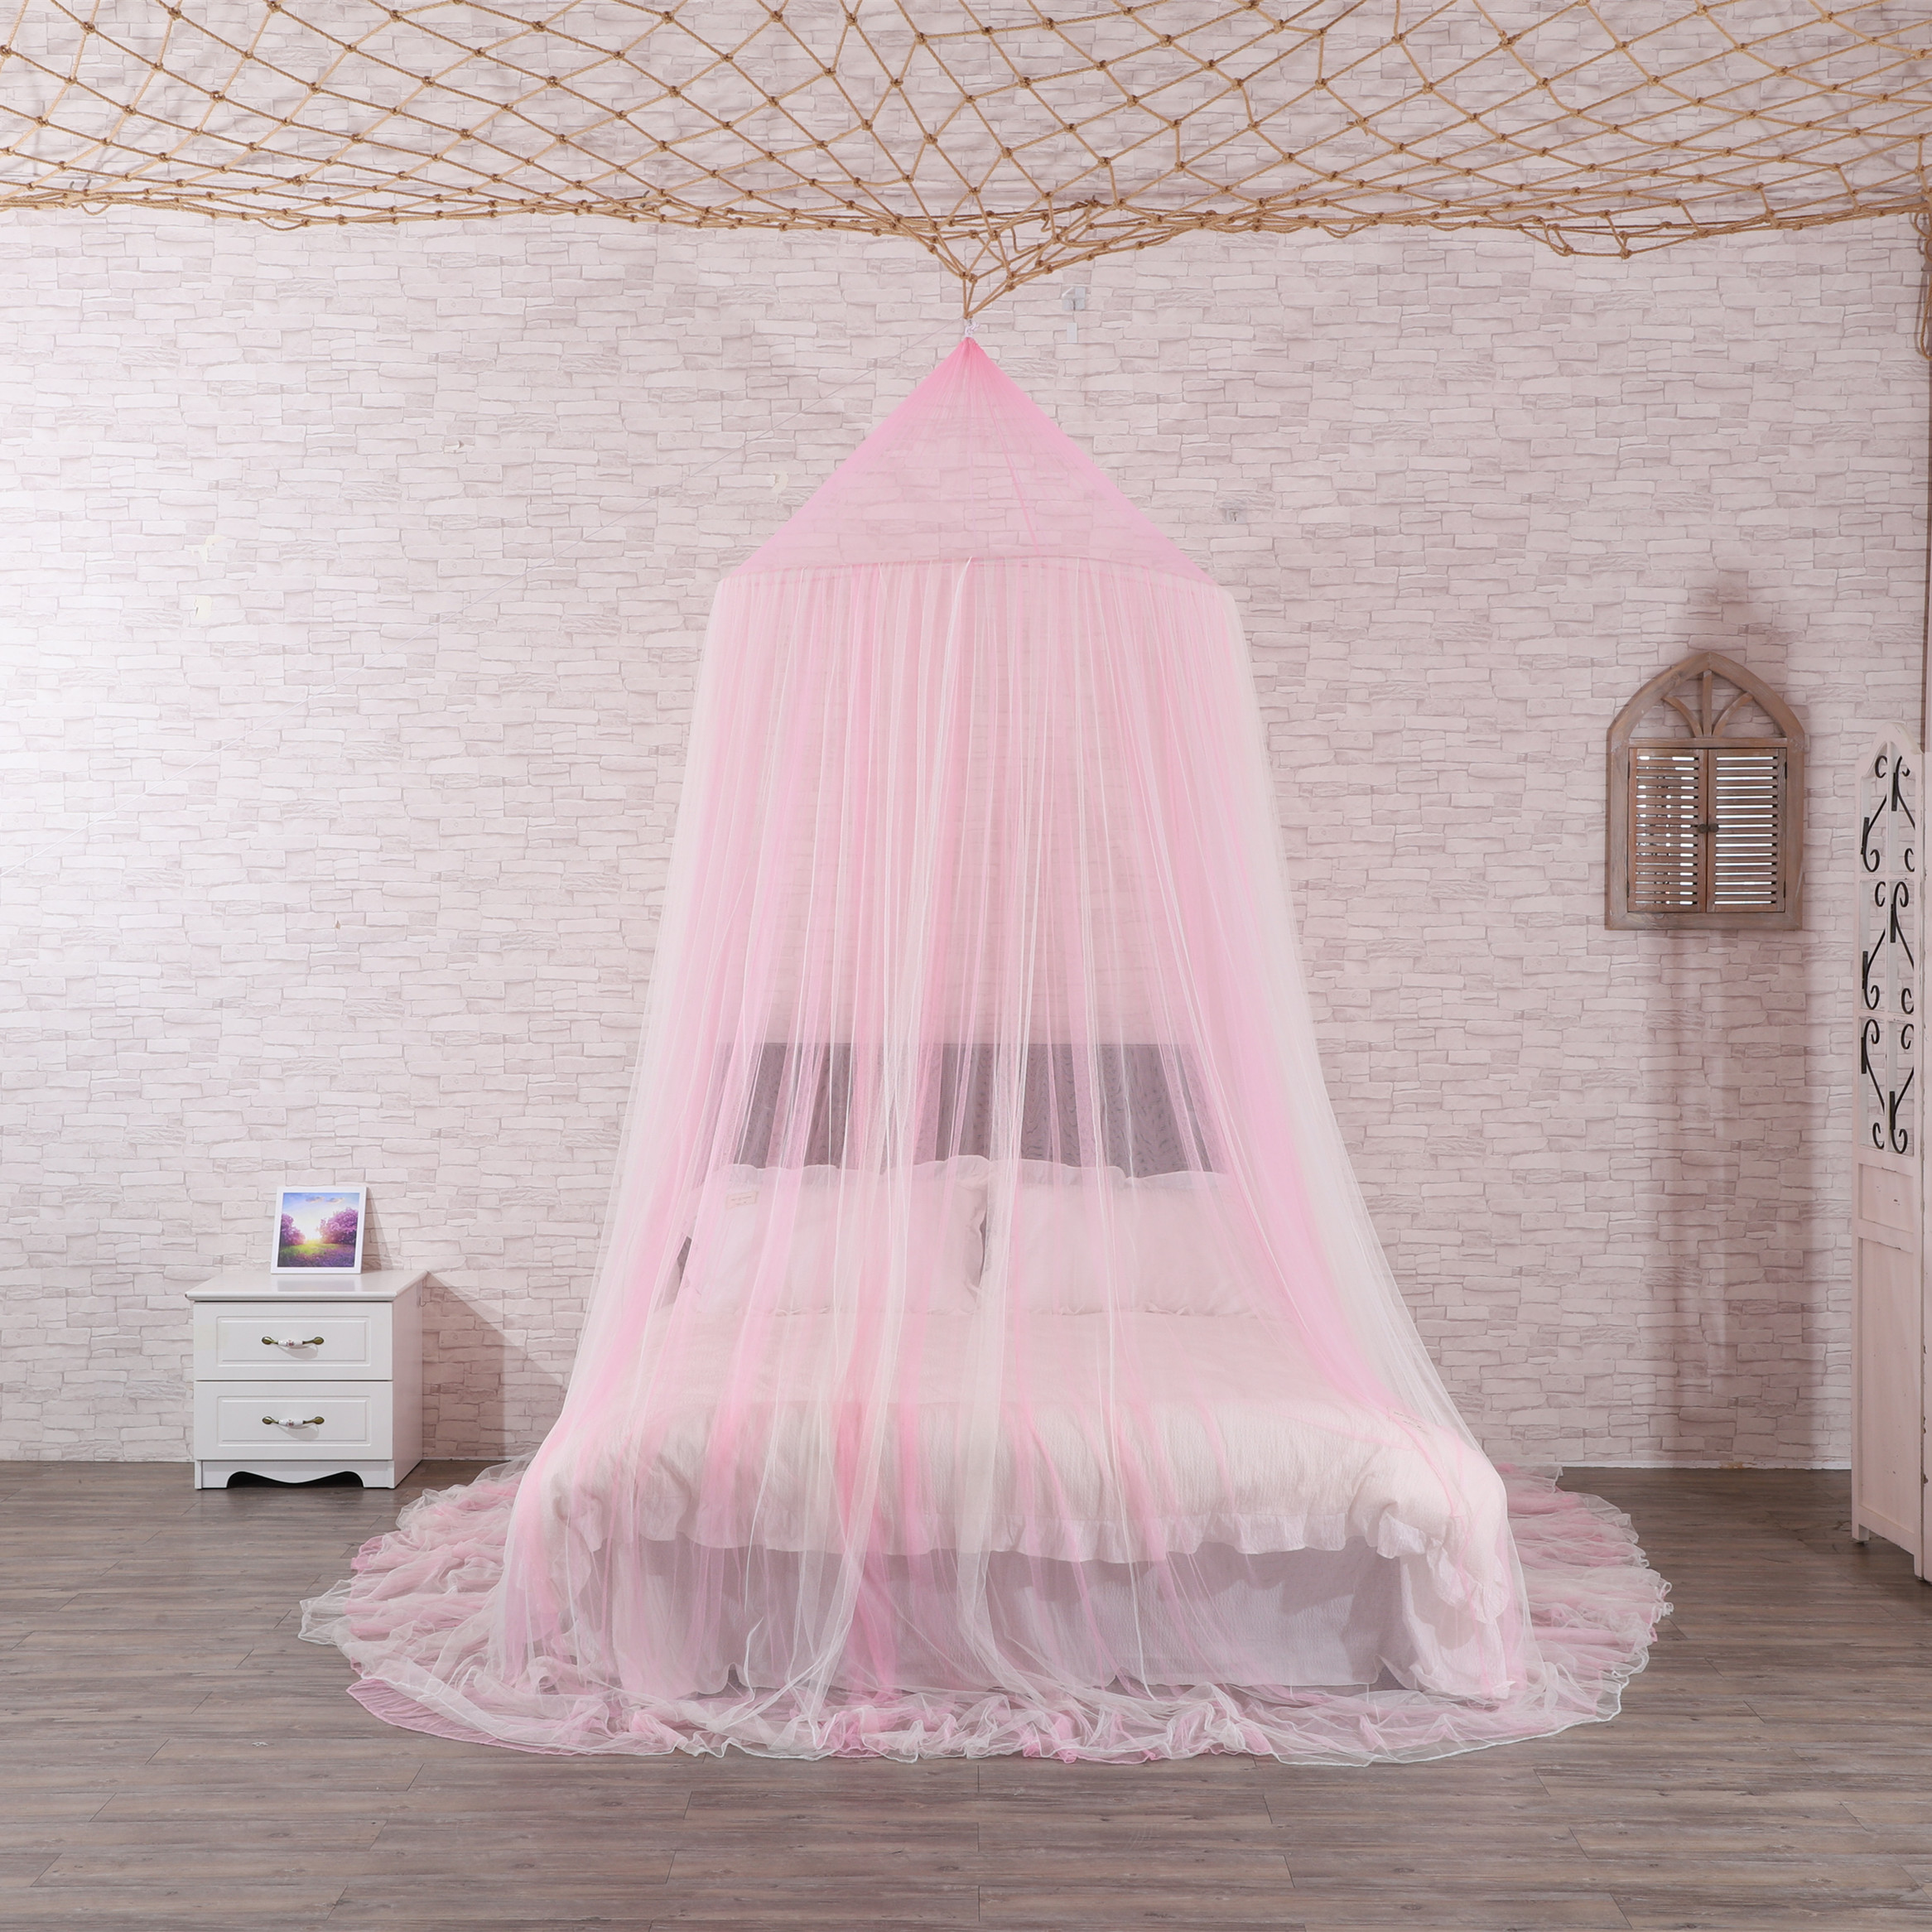 Die beliebtesten hochwertigen Moskitonetz große Kuppel Baldachin Doppelbett Netz King Size Moskitonetz Bett Baldachin für Mädchen